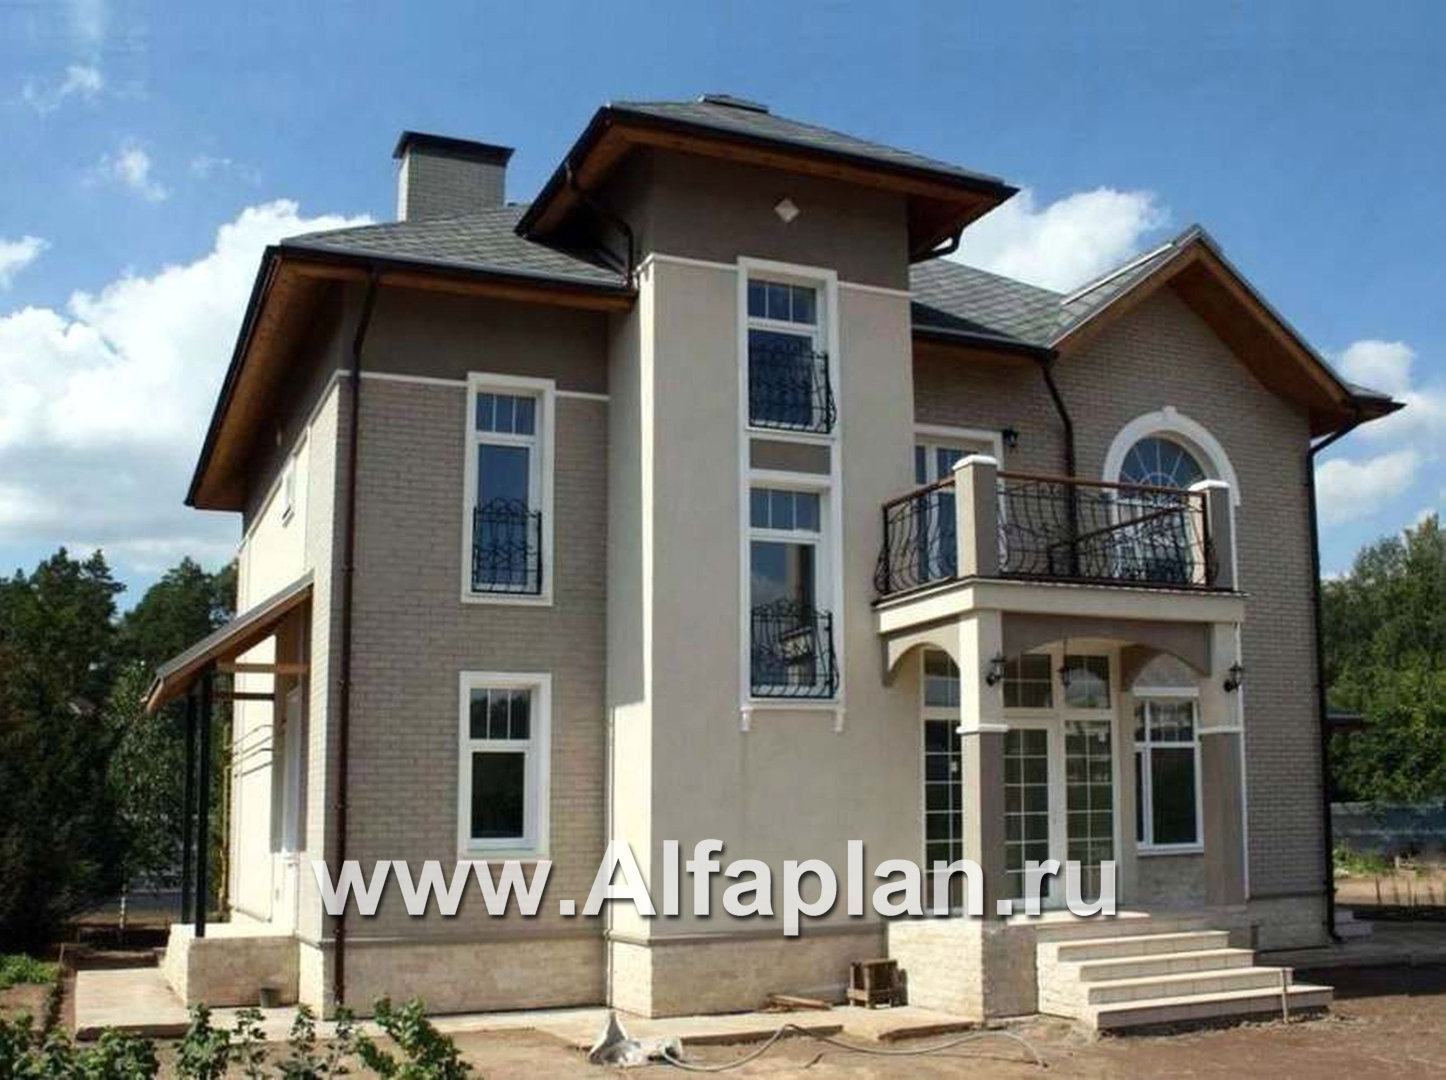 Проекты домов Альфаплан - «Разумовский» - красивый коттедж с элементами стиля модерн - основное изображение